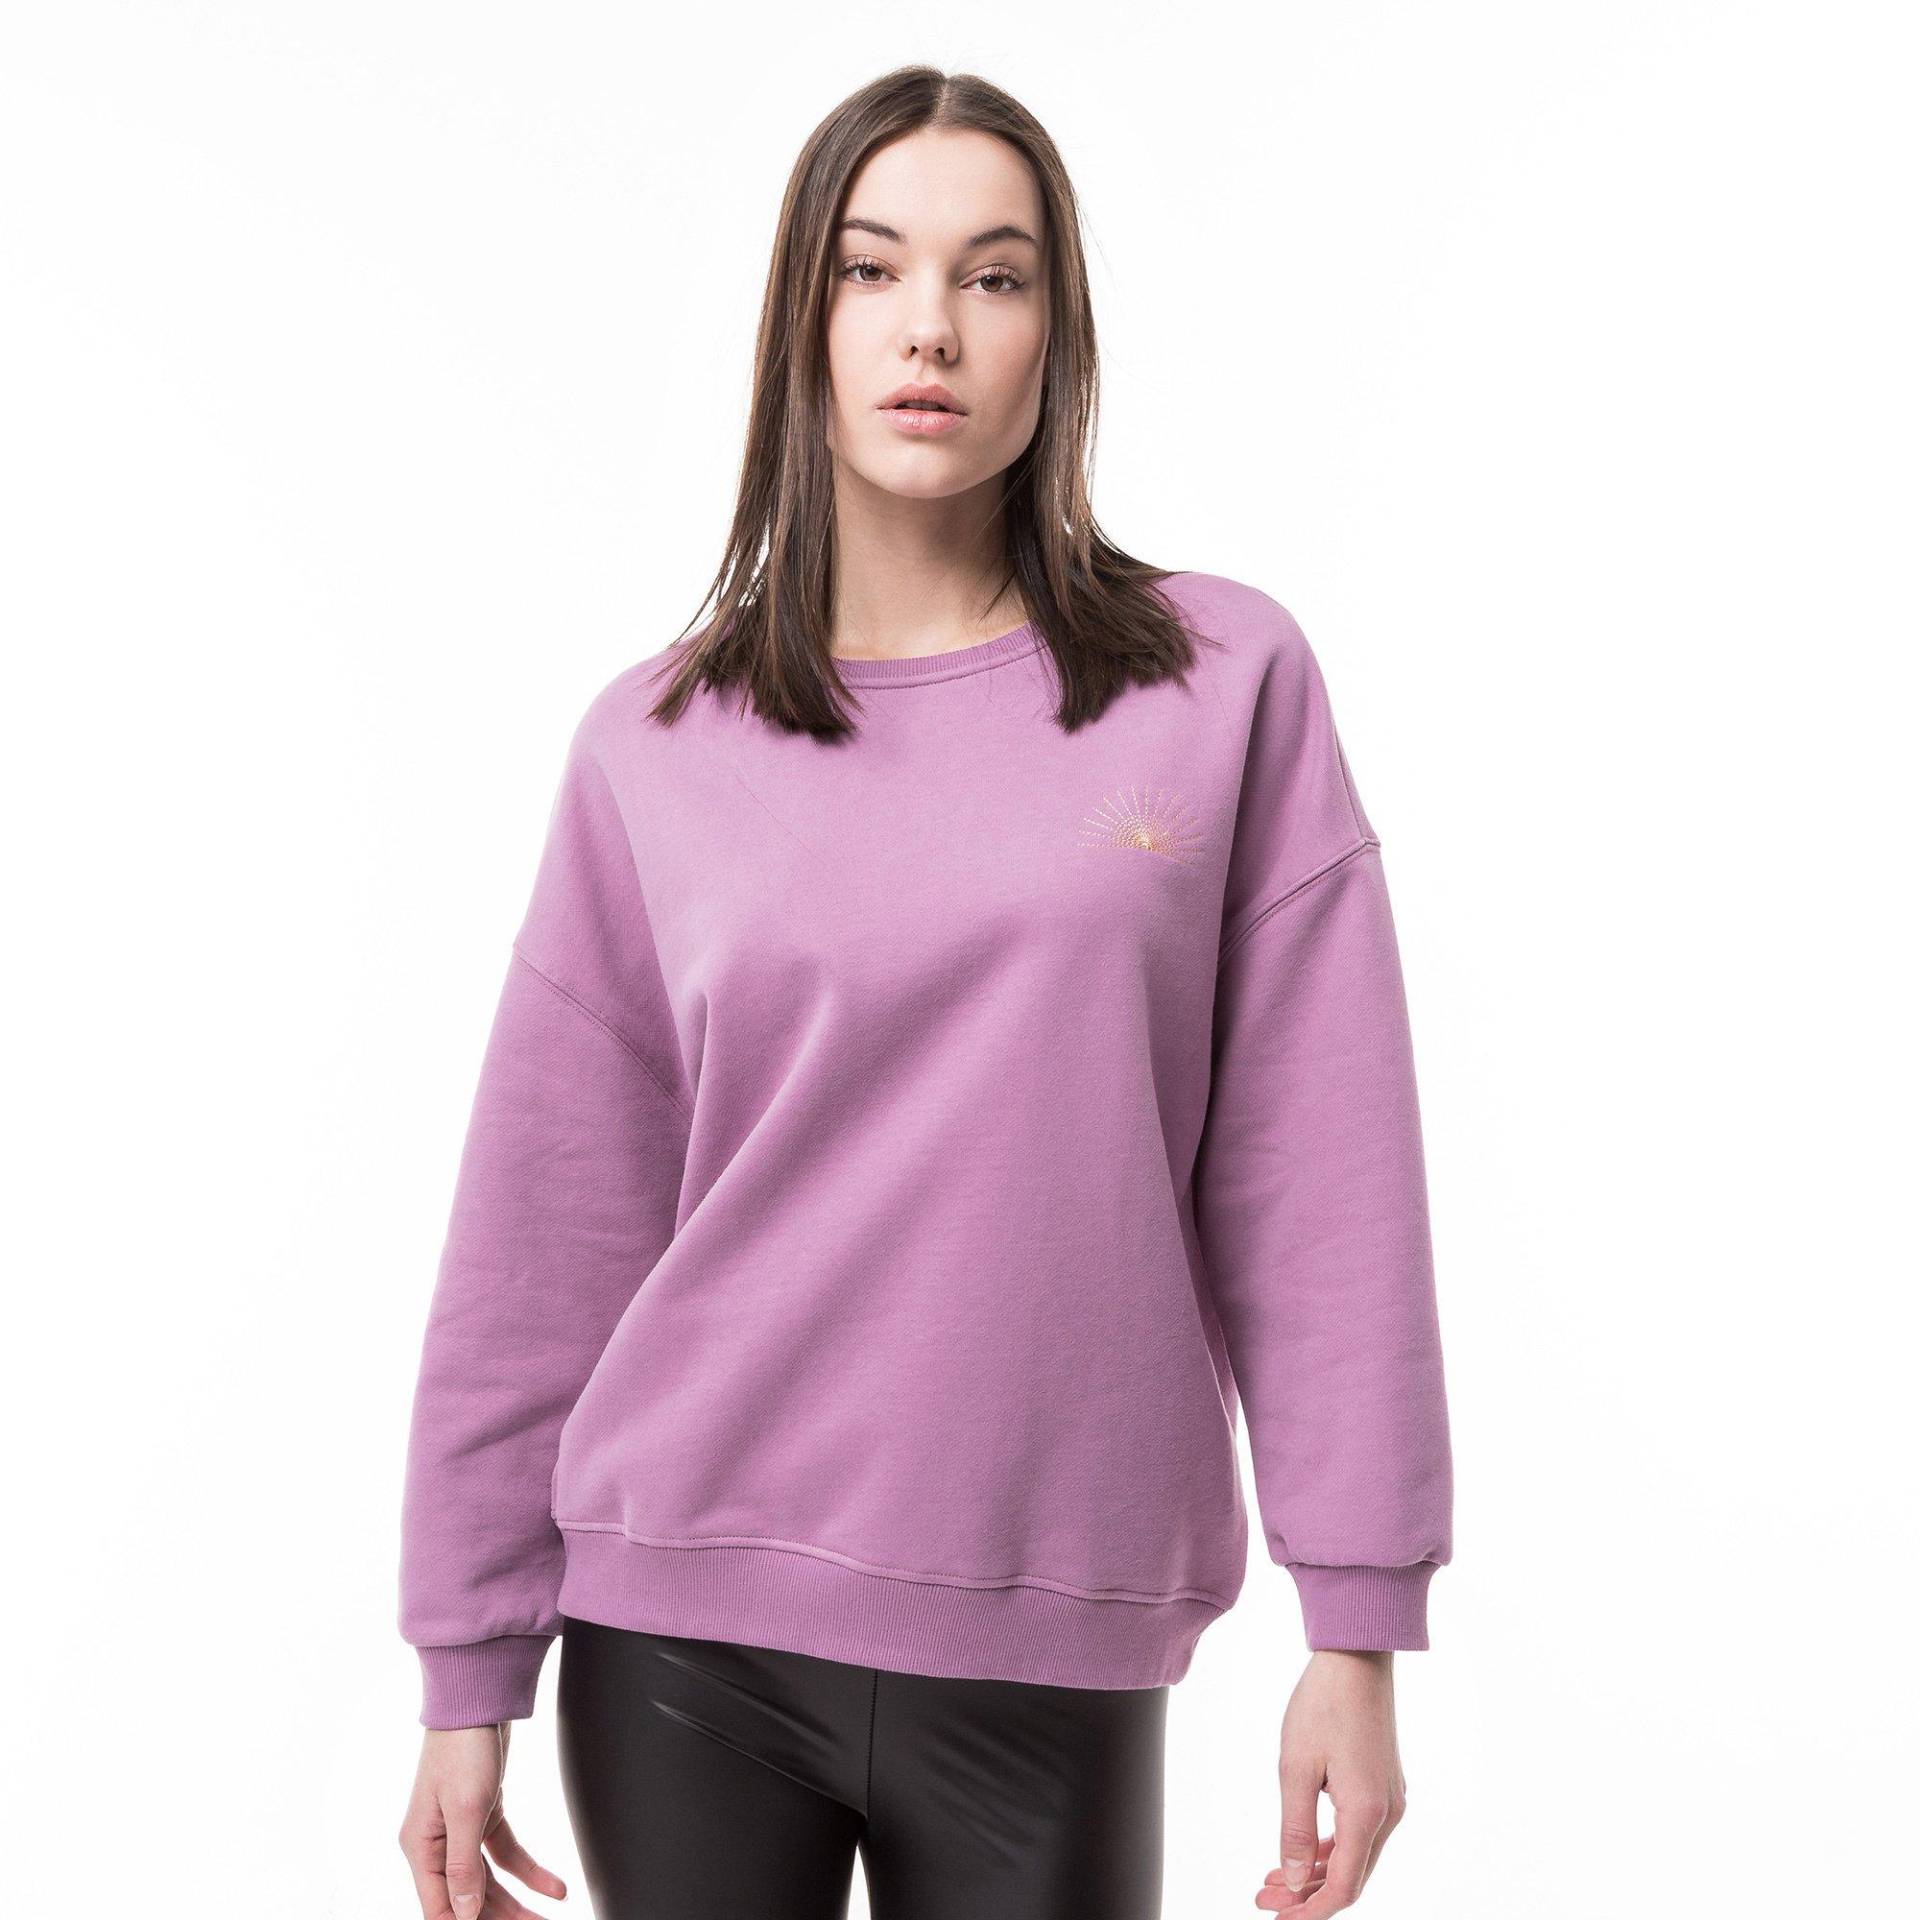 Sweatshirt Damen Malvenfarben XL von Manor Woman